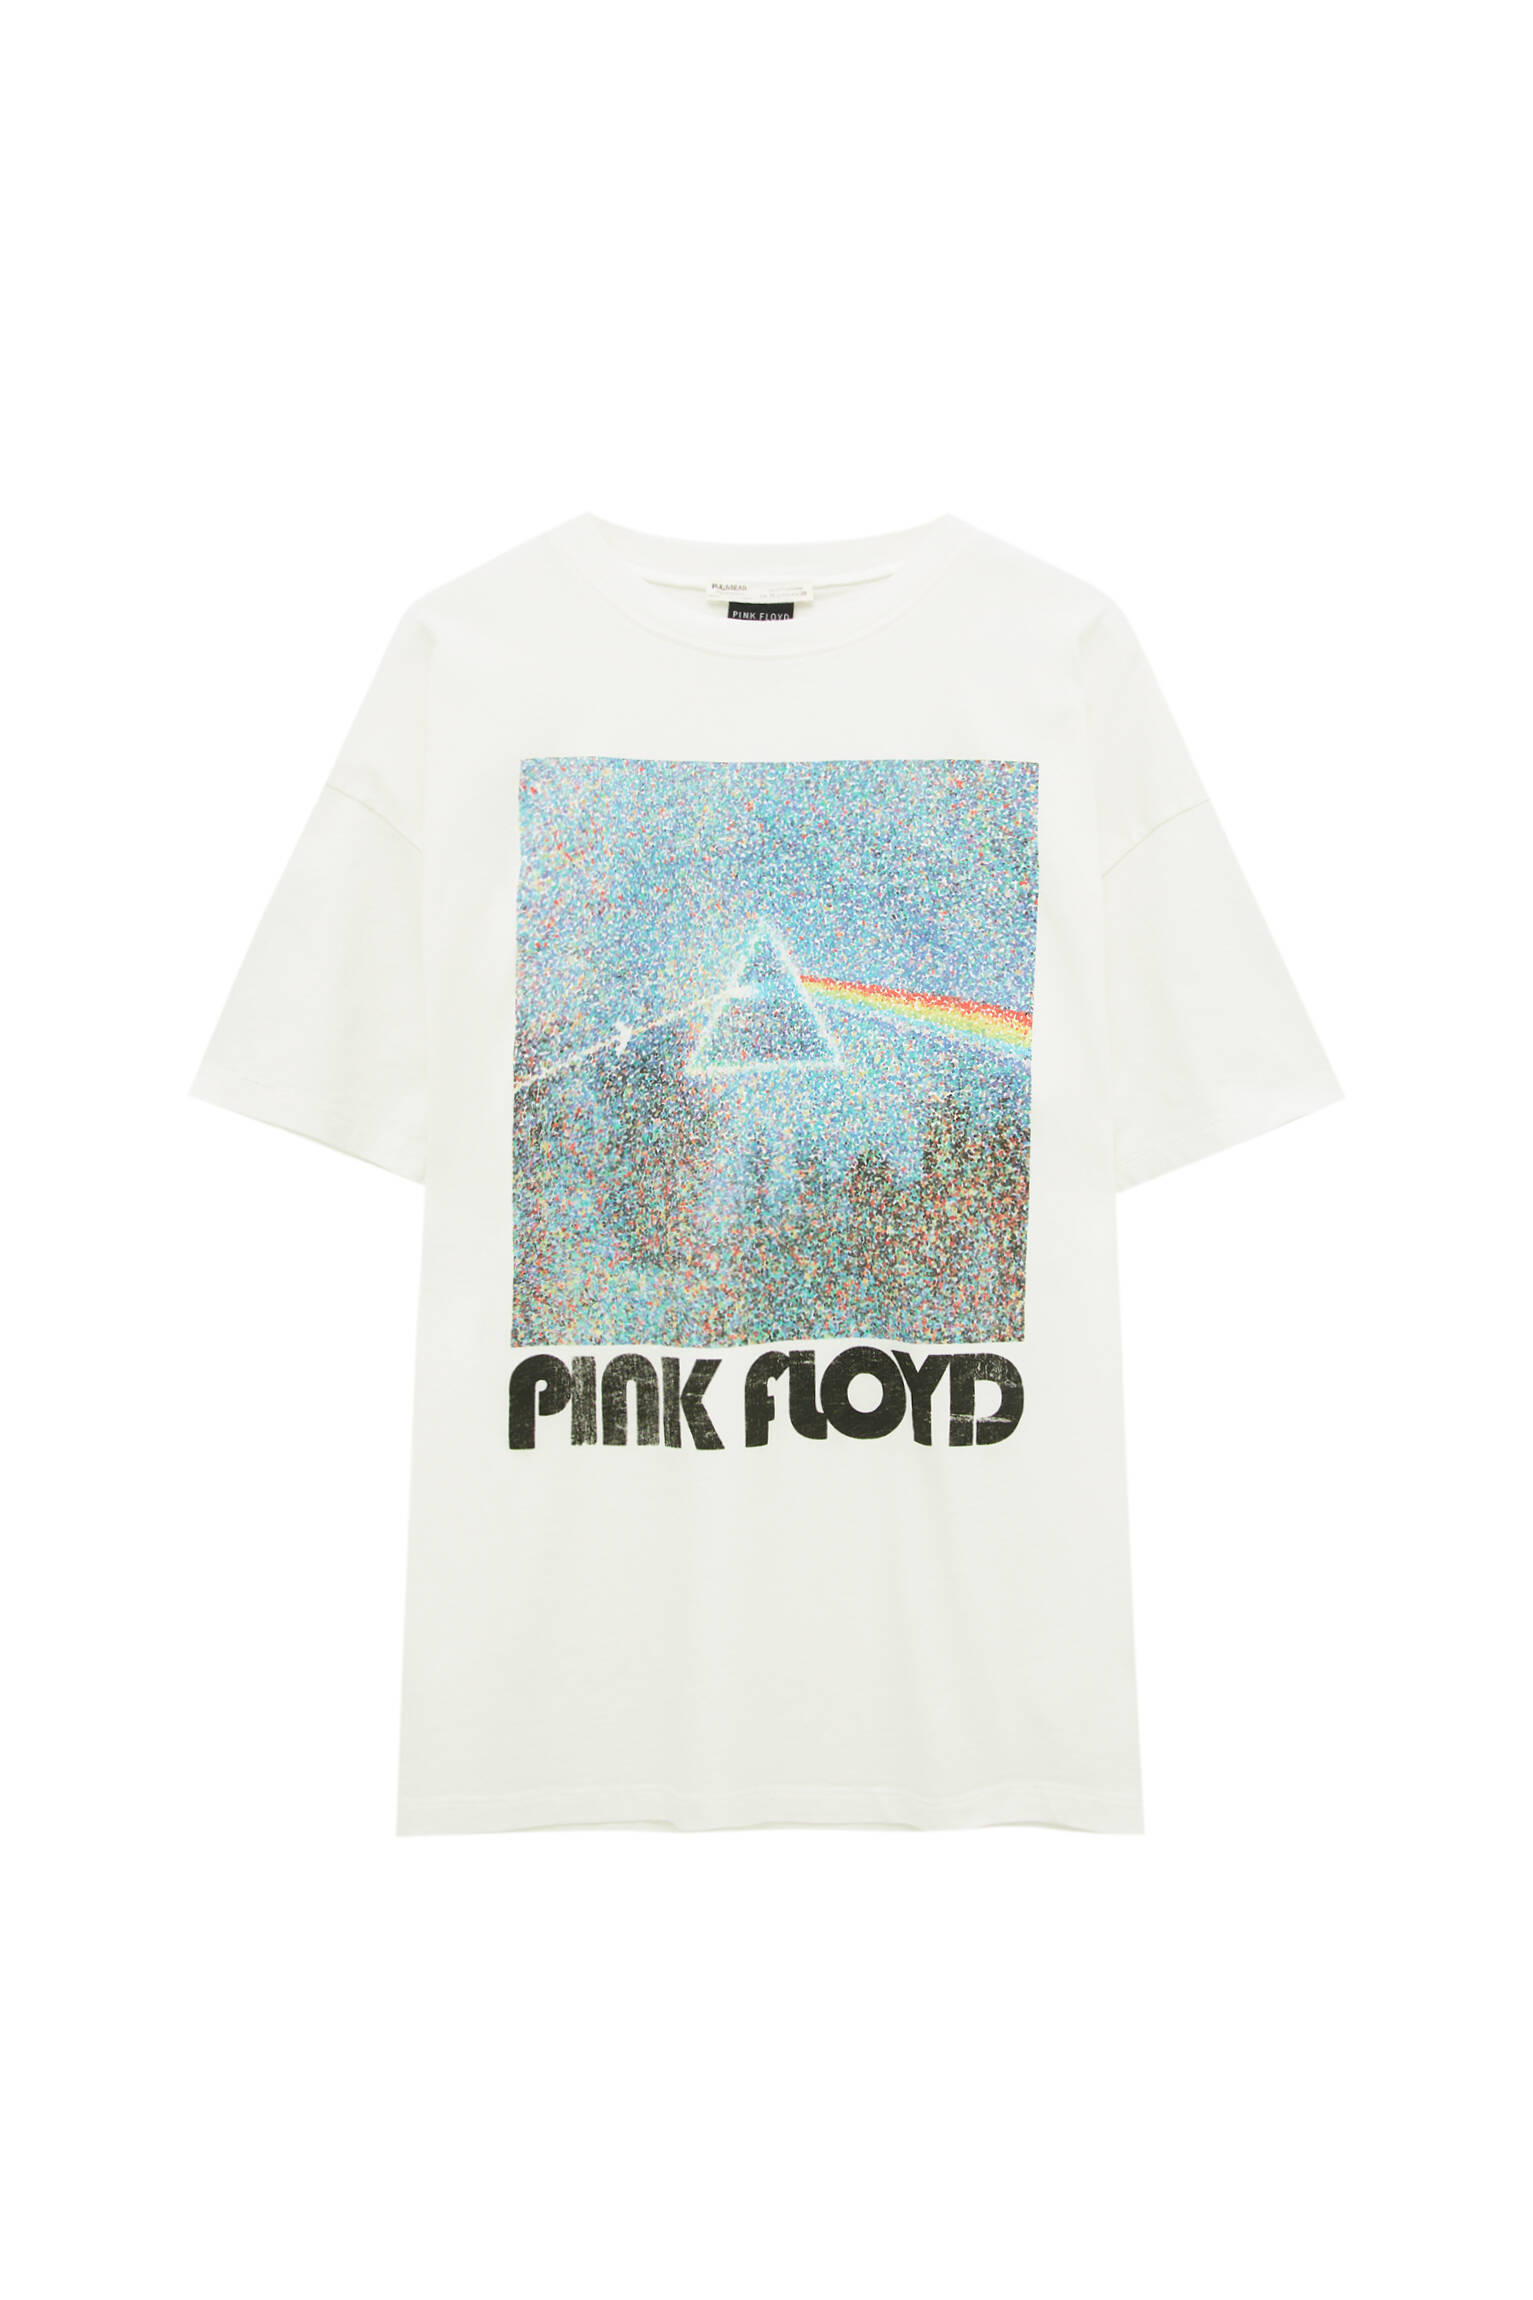 Pull&bear Femme T-shirt Pink Floyd à Imprimé Photo Contrastant, Col Rond Et Manches Courtes. Glace S